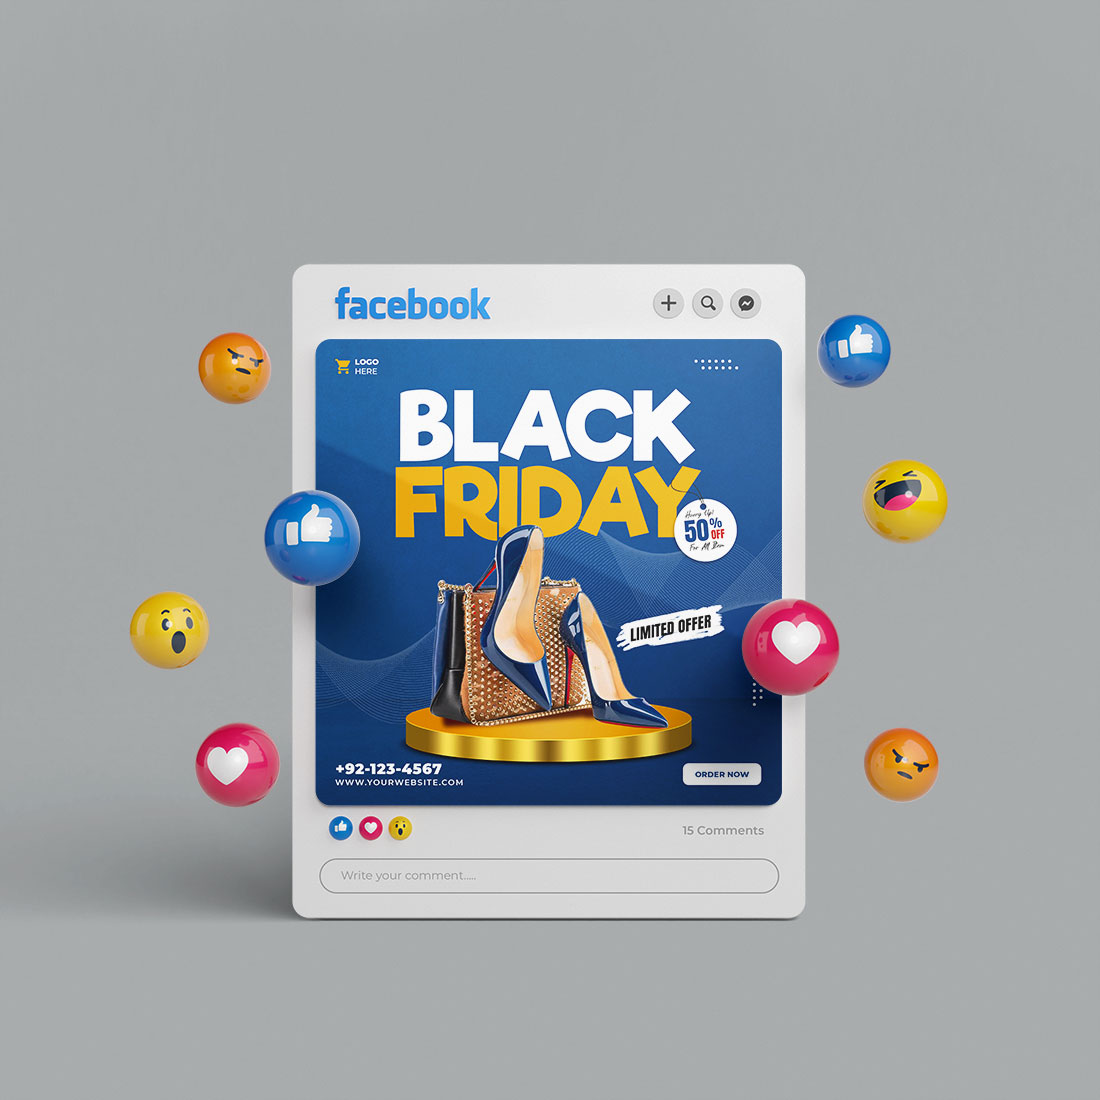 Black friday limited offer sale banner. Black friday social media